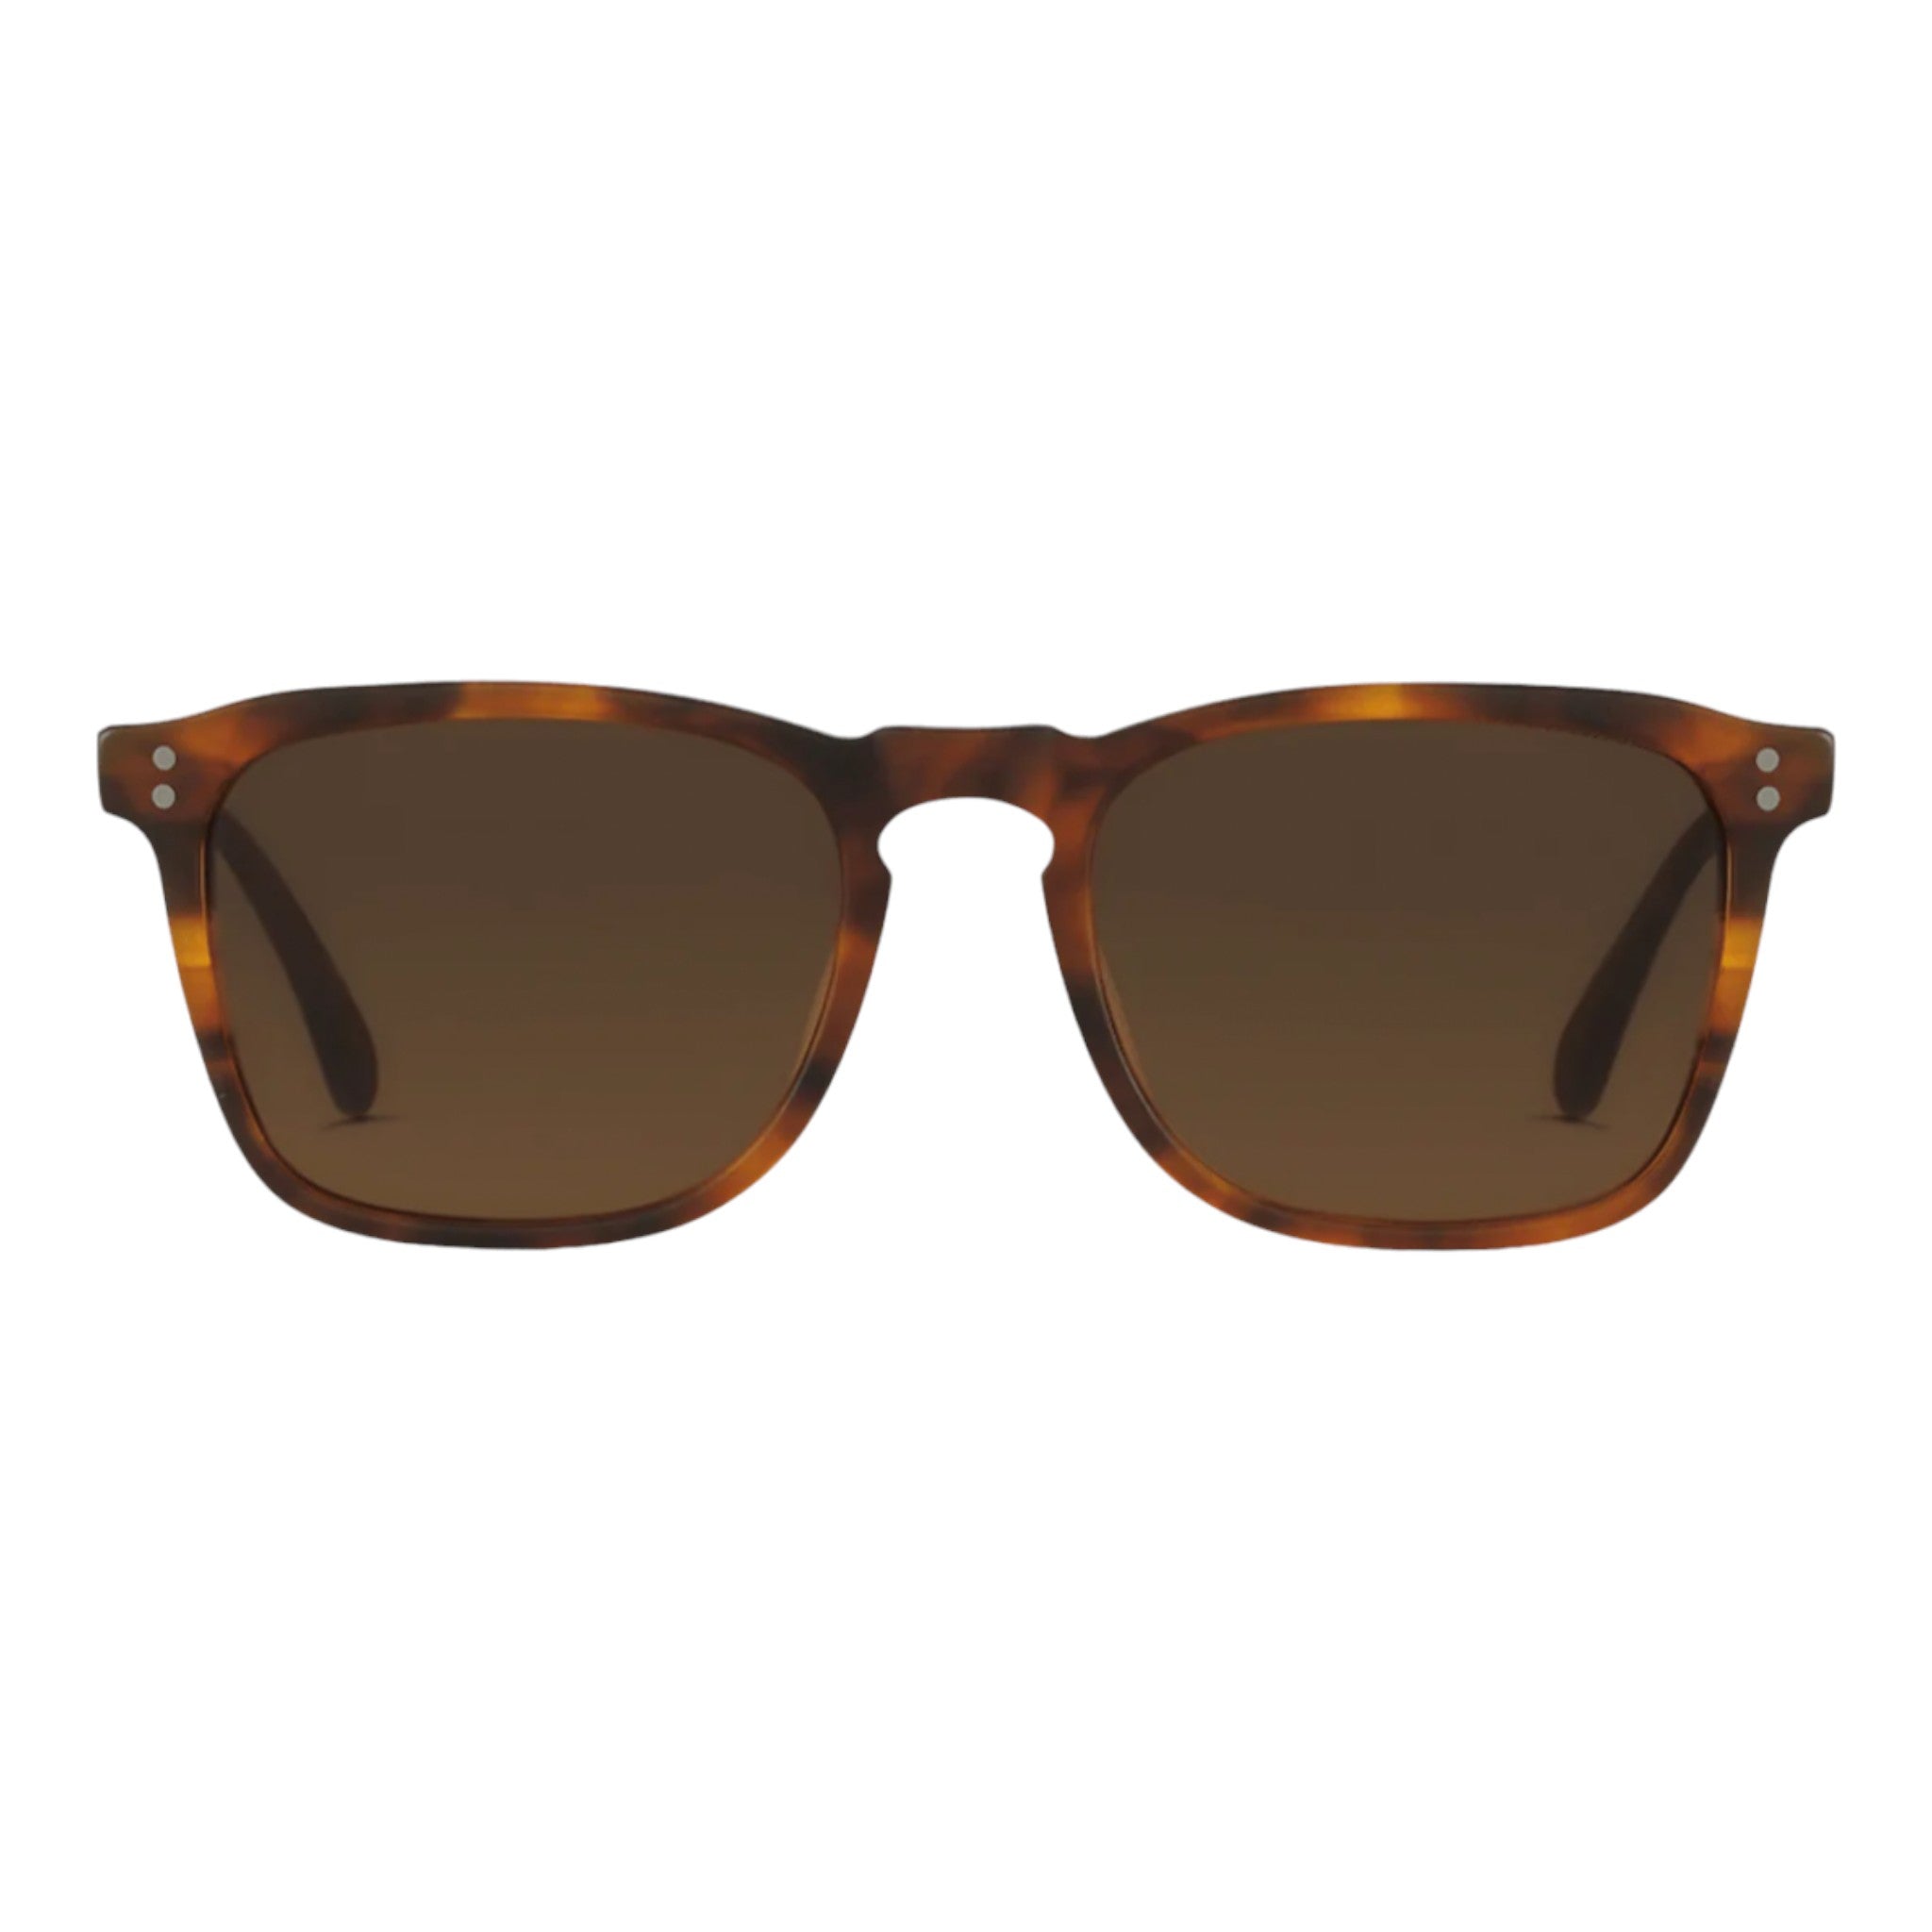 Raen - Wiley 54 Sunglasses - Matte Rootbeer / Brown